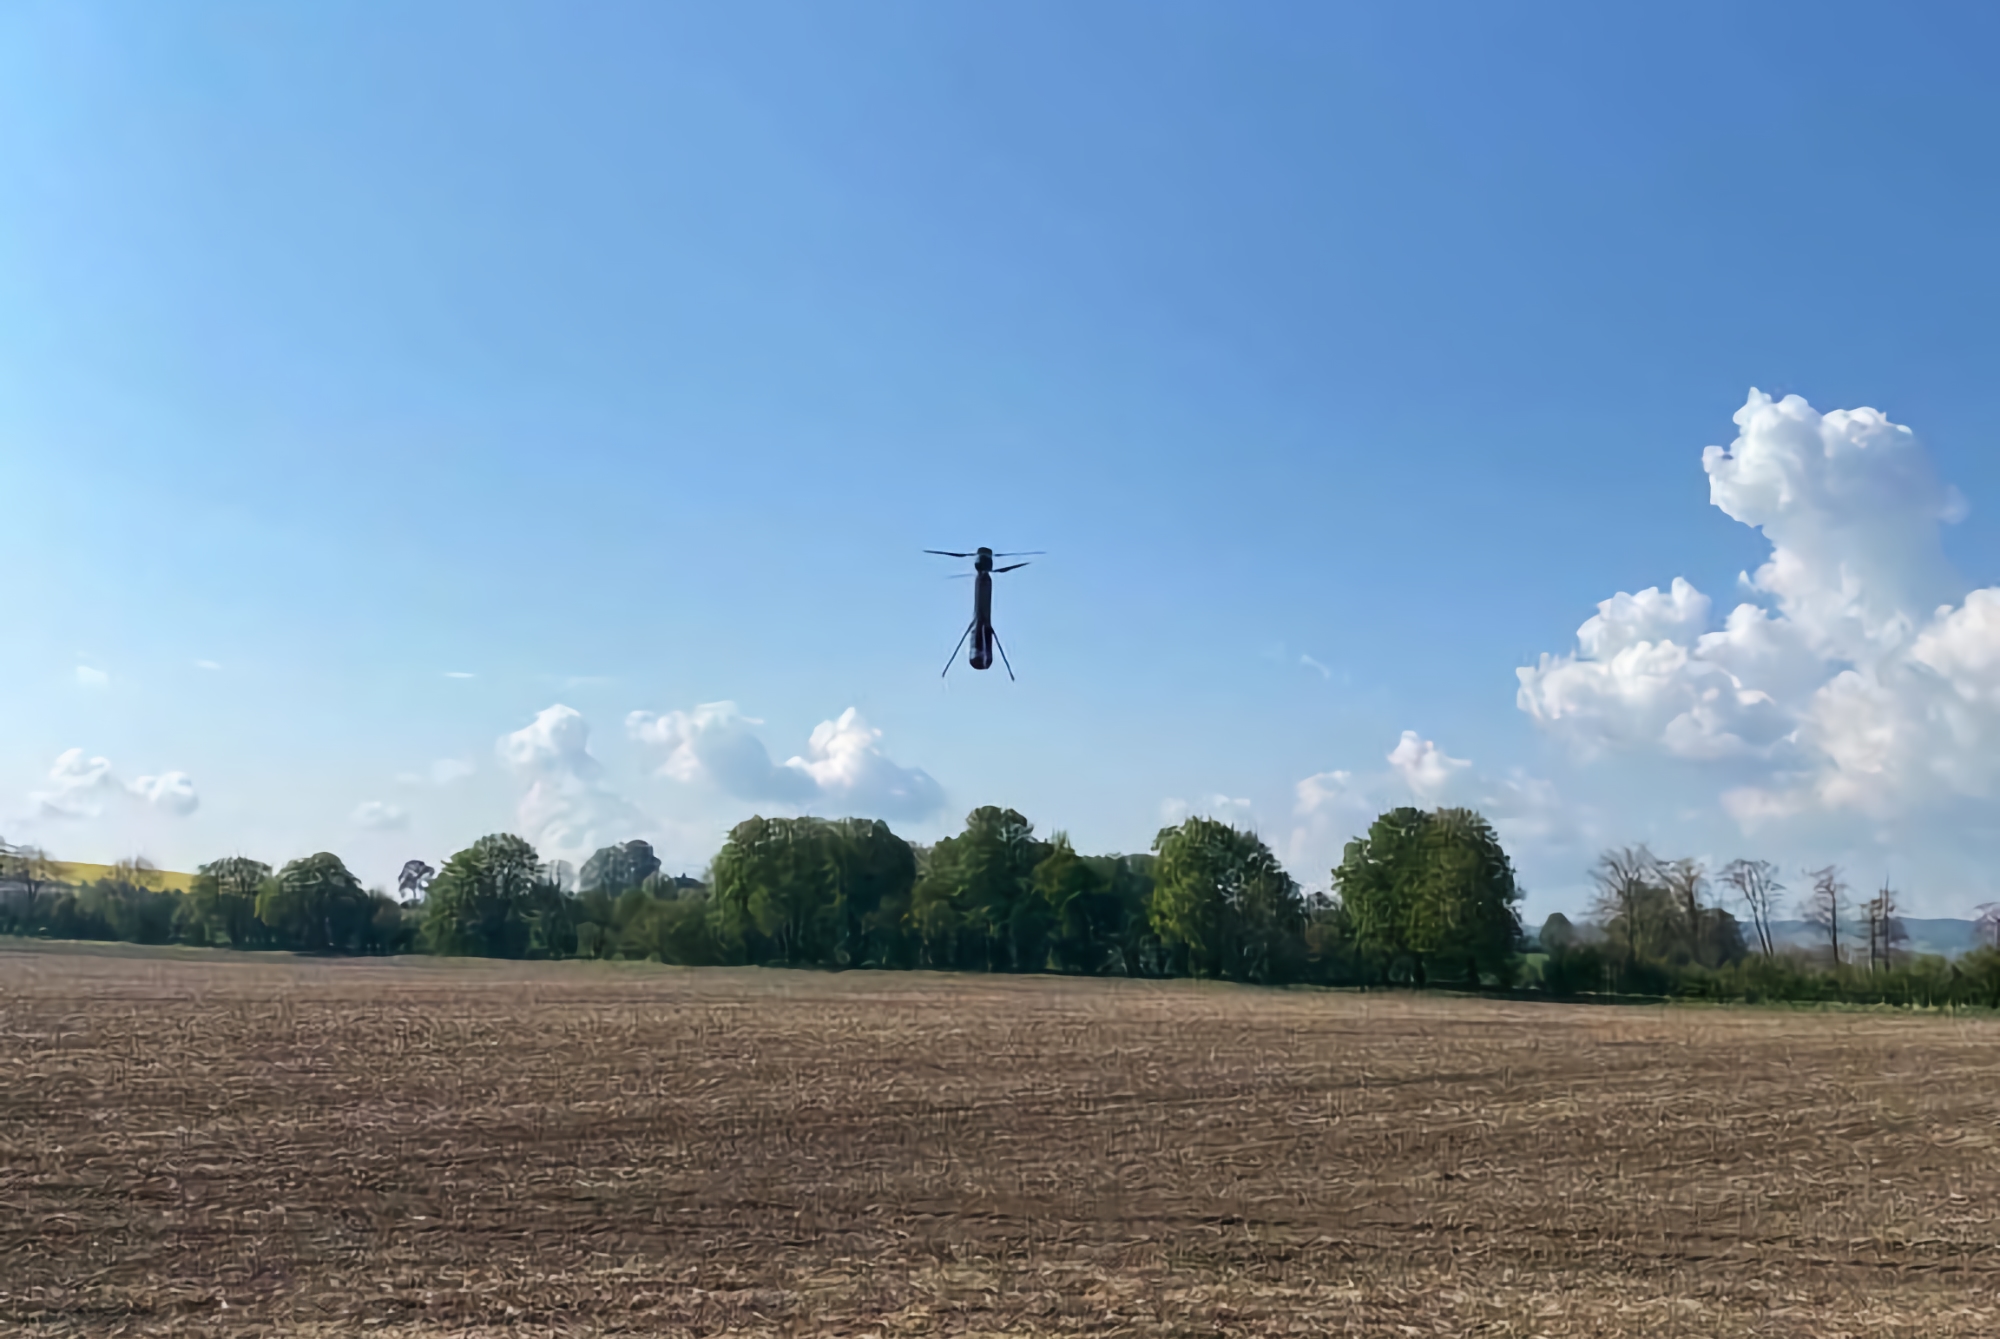 En service dans les forces armées ukrainiennes, ils ont remarqué un drone kamikaze inhabituel avec un système de décollage vertical. Il pourrait s'agir d'un drone PHOLOS rare